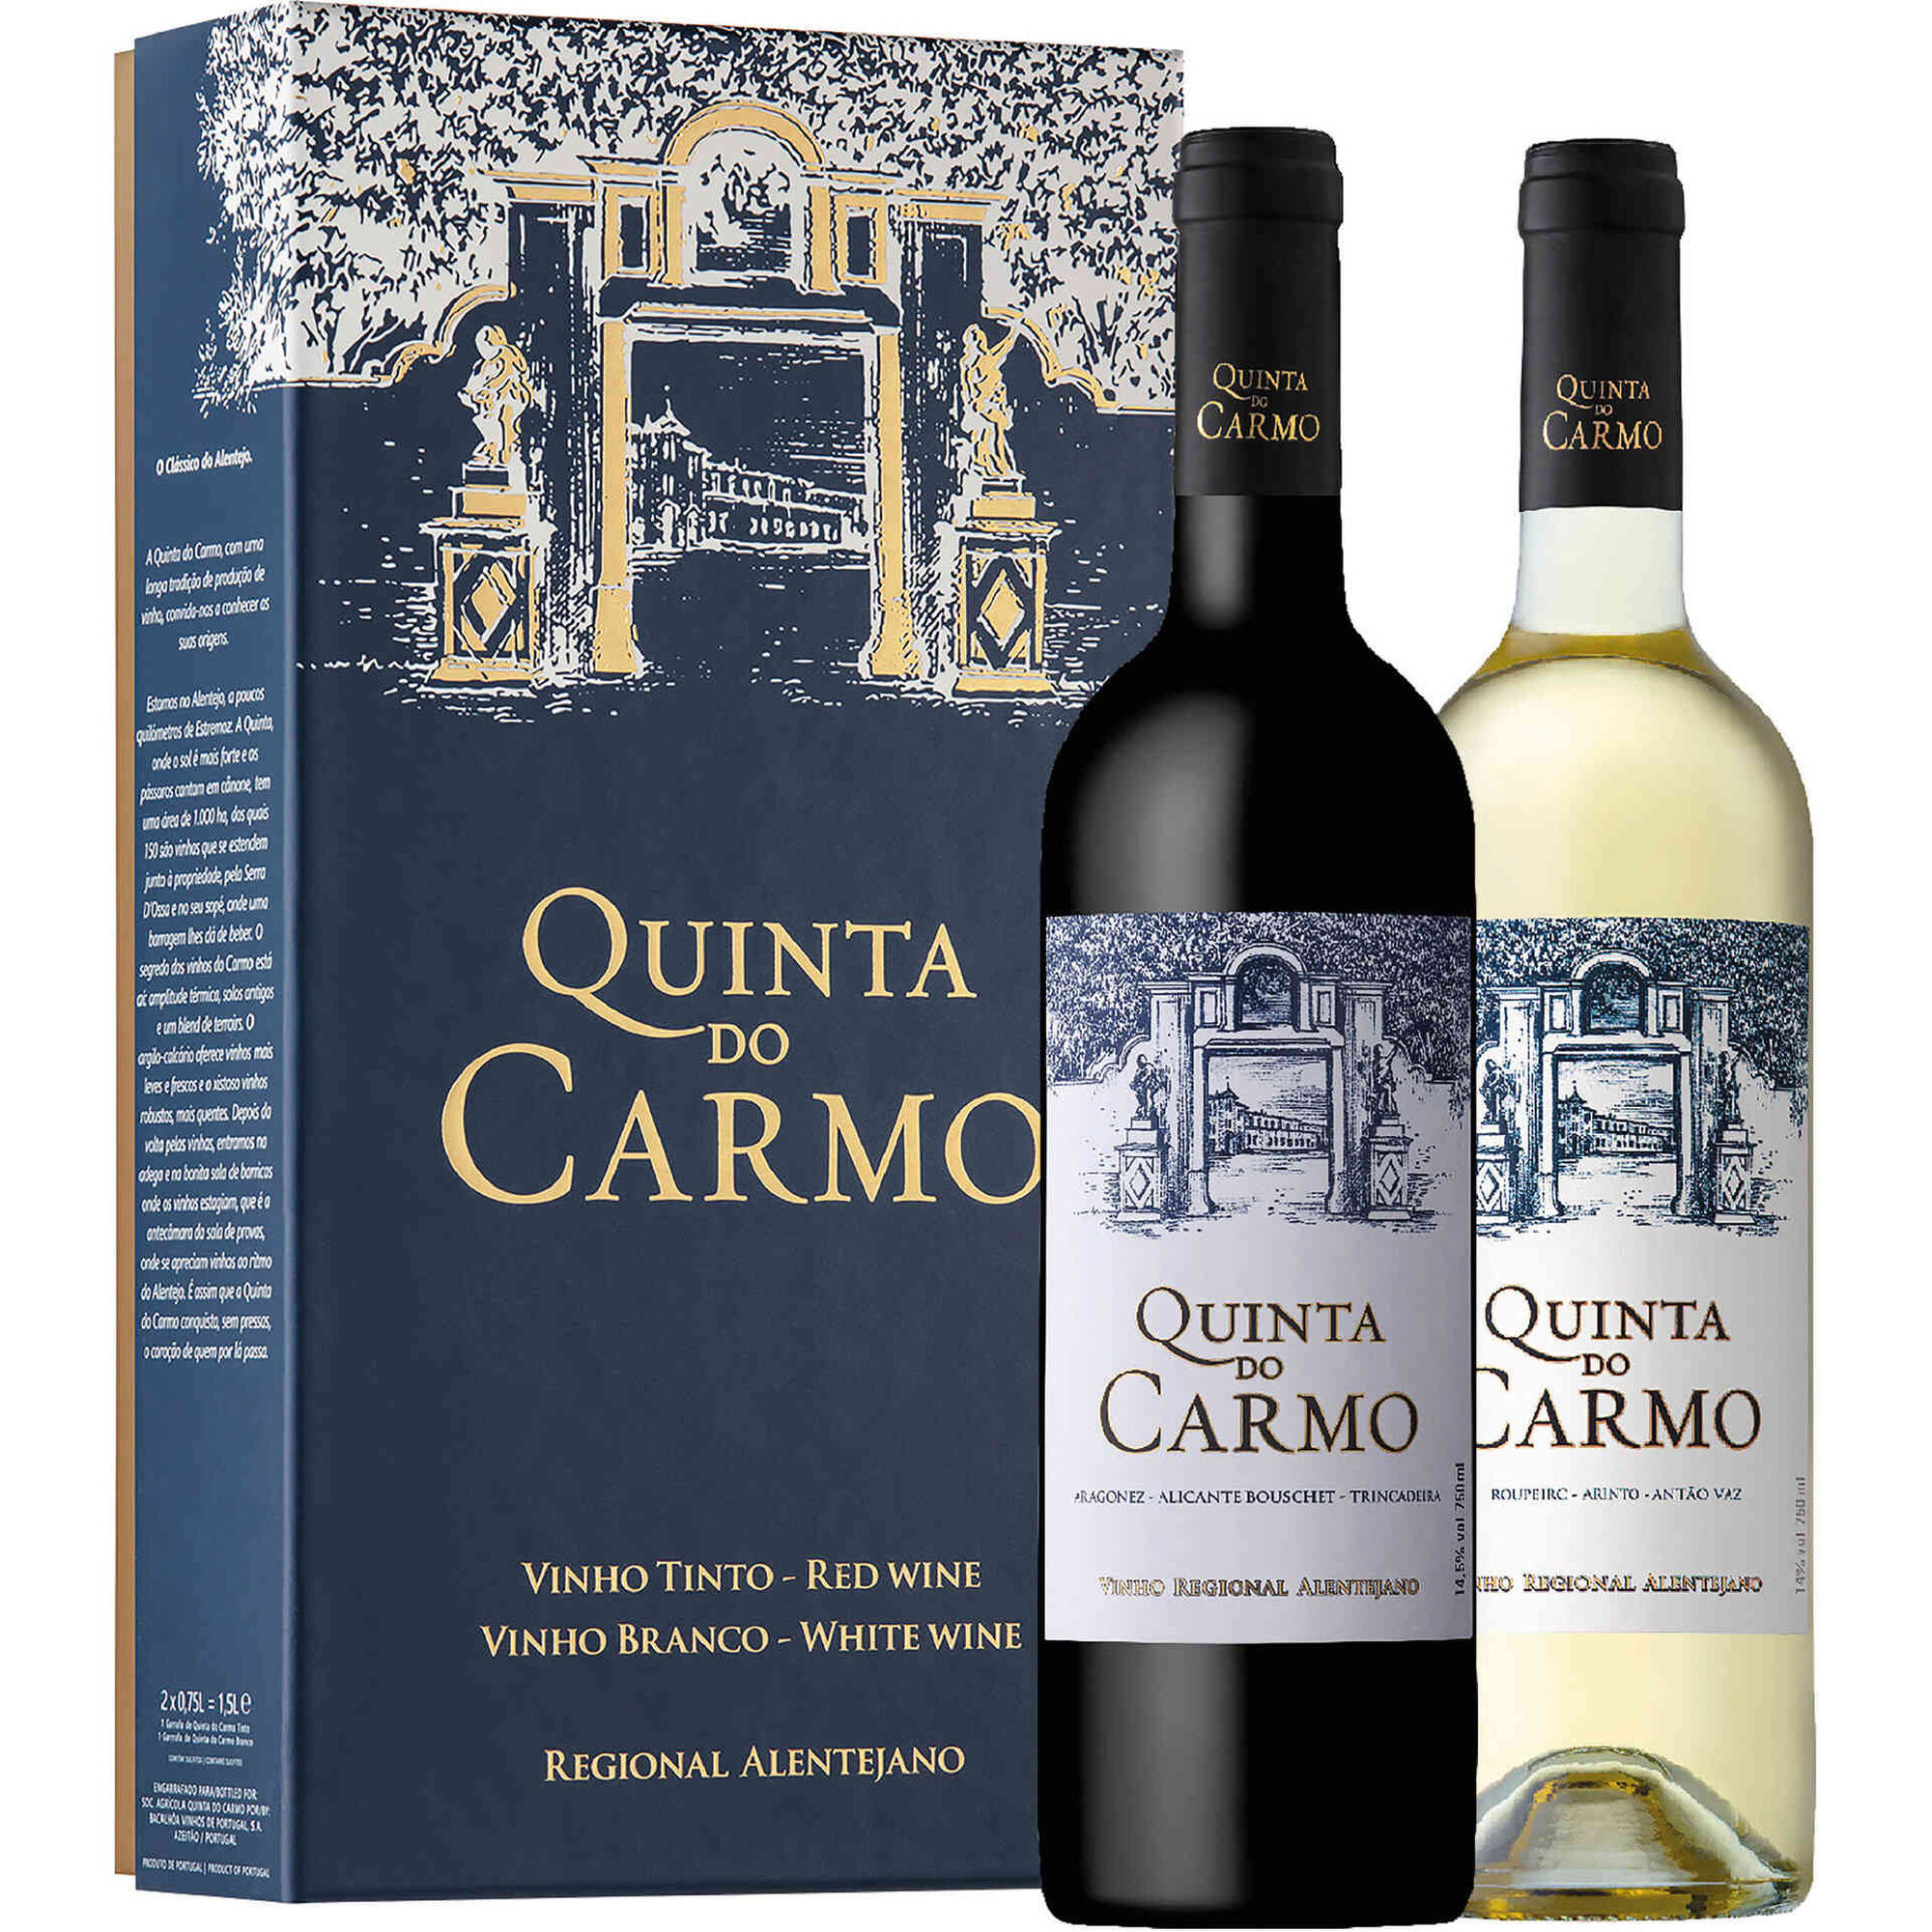 Quinta do Carmo Regional Alentejano Vinho Tinto e Vinha do Carmo Regional Lisboa Vinho Branco Conjunto